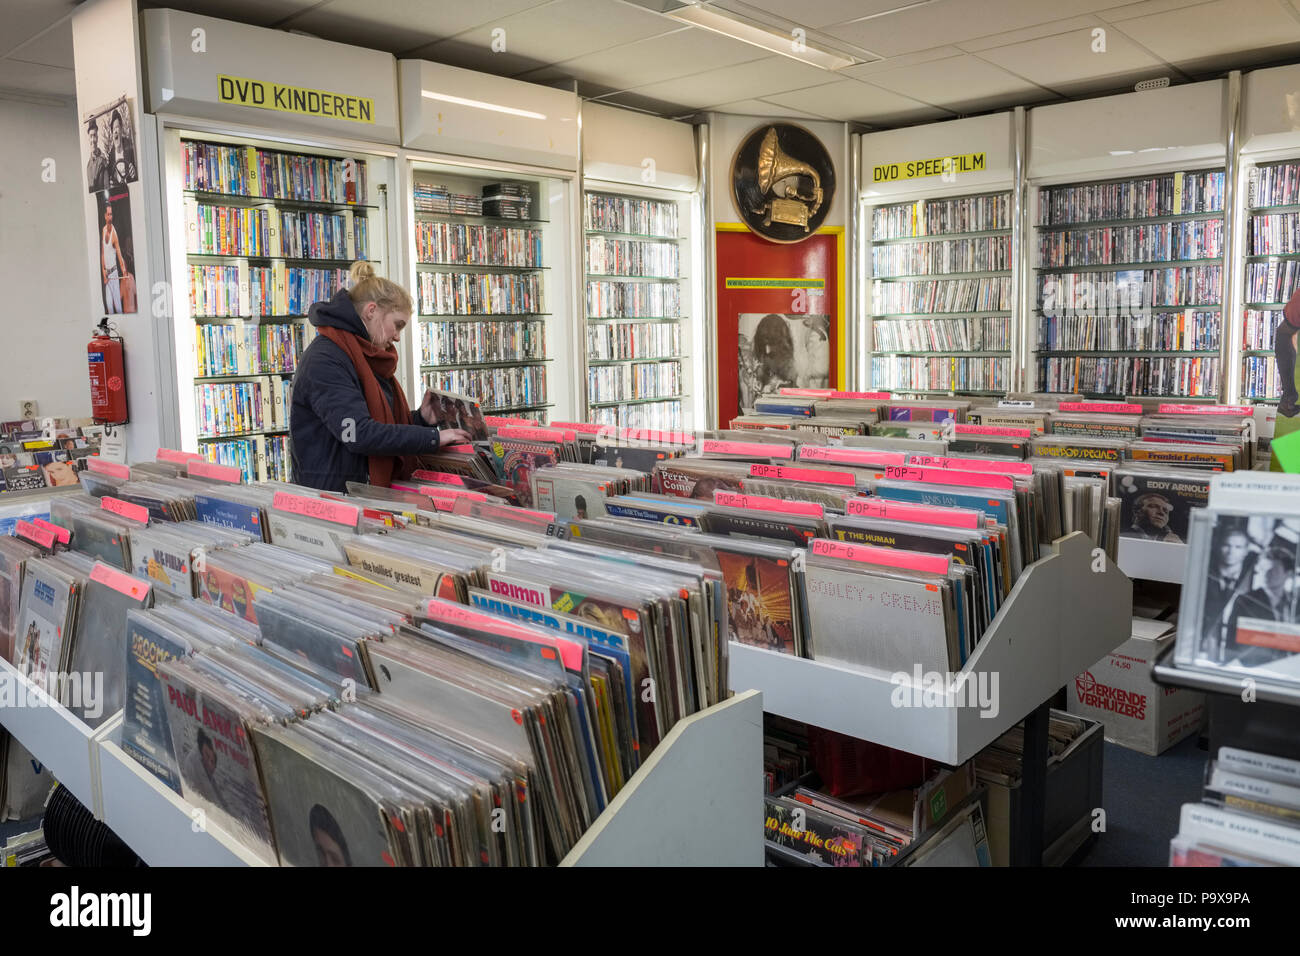 Junge Frau surfen Schallplatten und Alben in den Regalen in einem Plattenladen und DVD Store Innenraum, Amsterdam, Niederlande, Holland, Europa Stockfoto